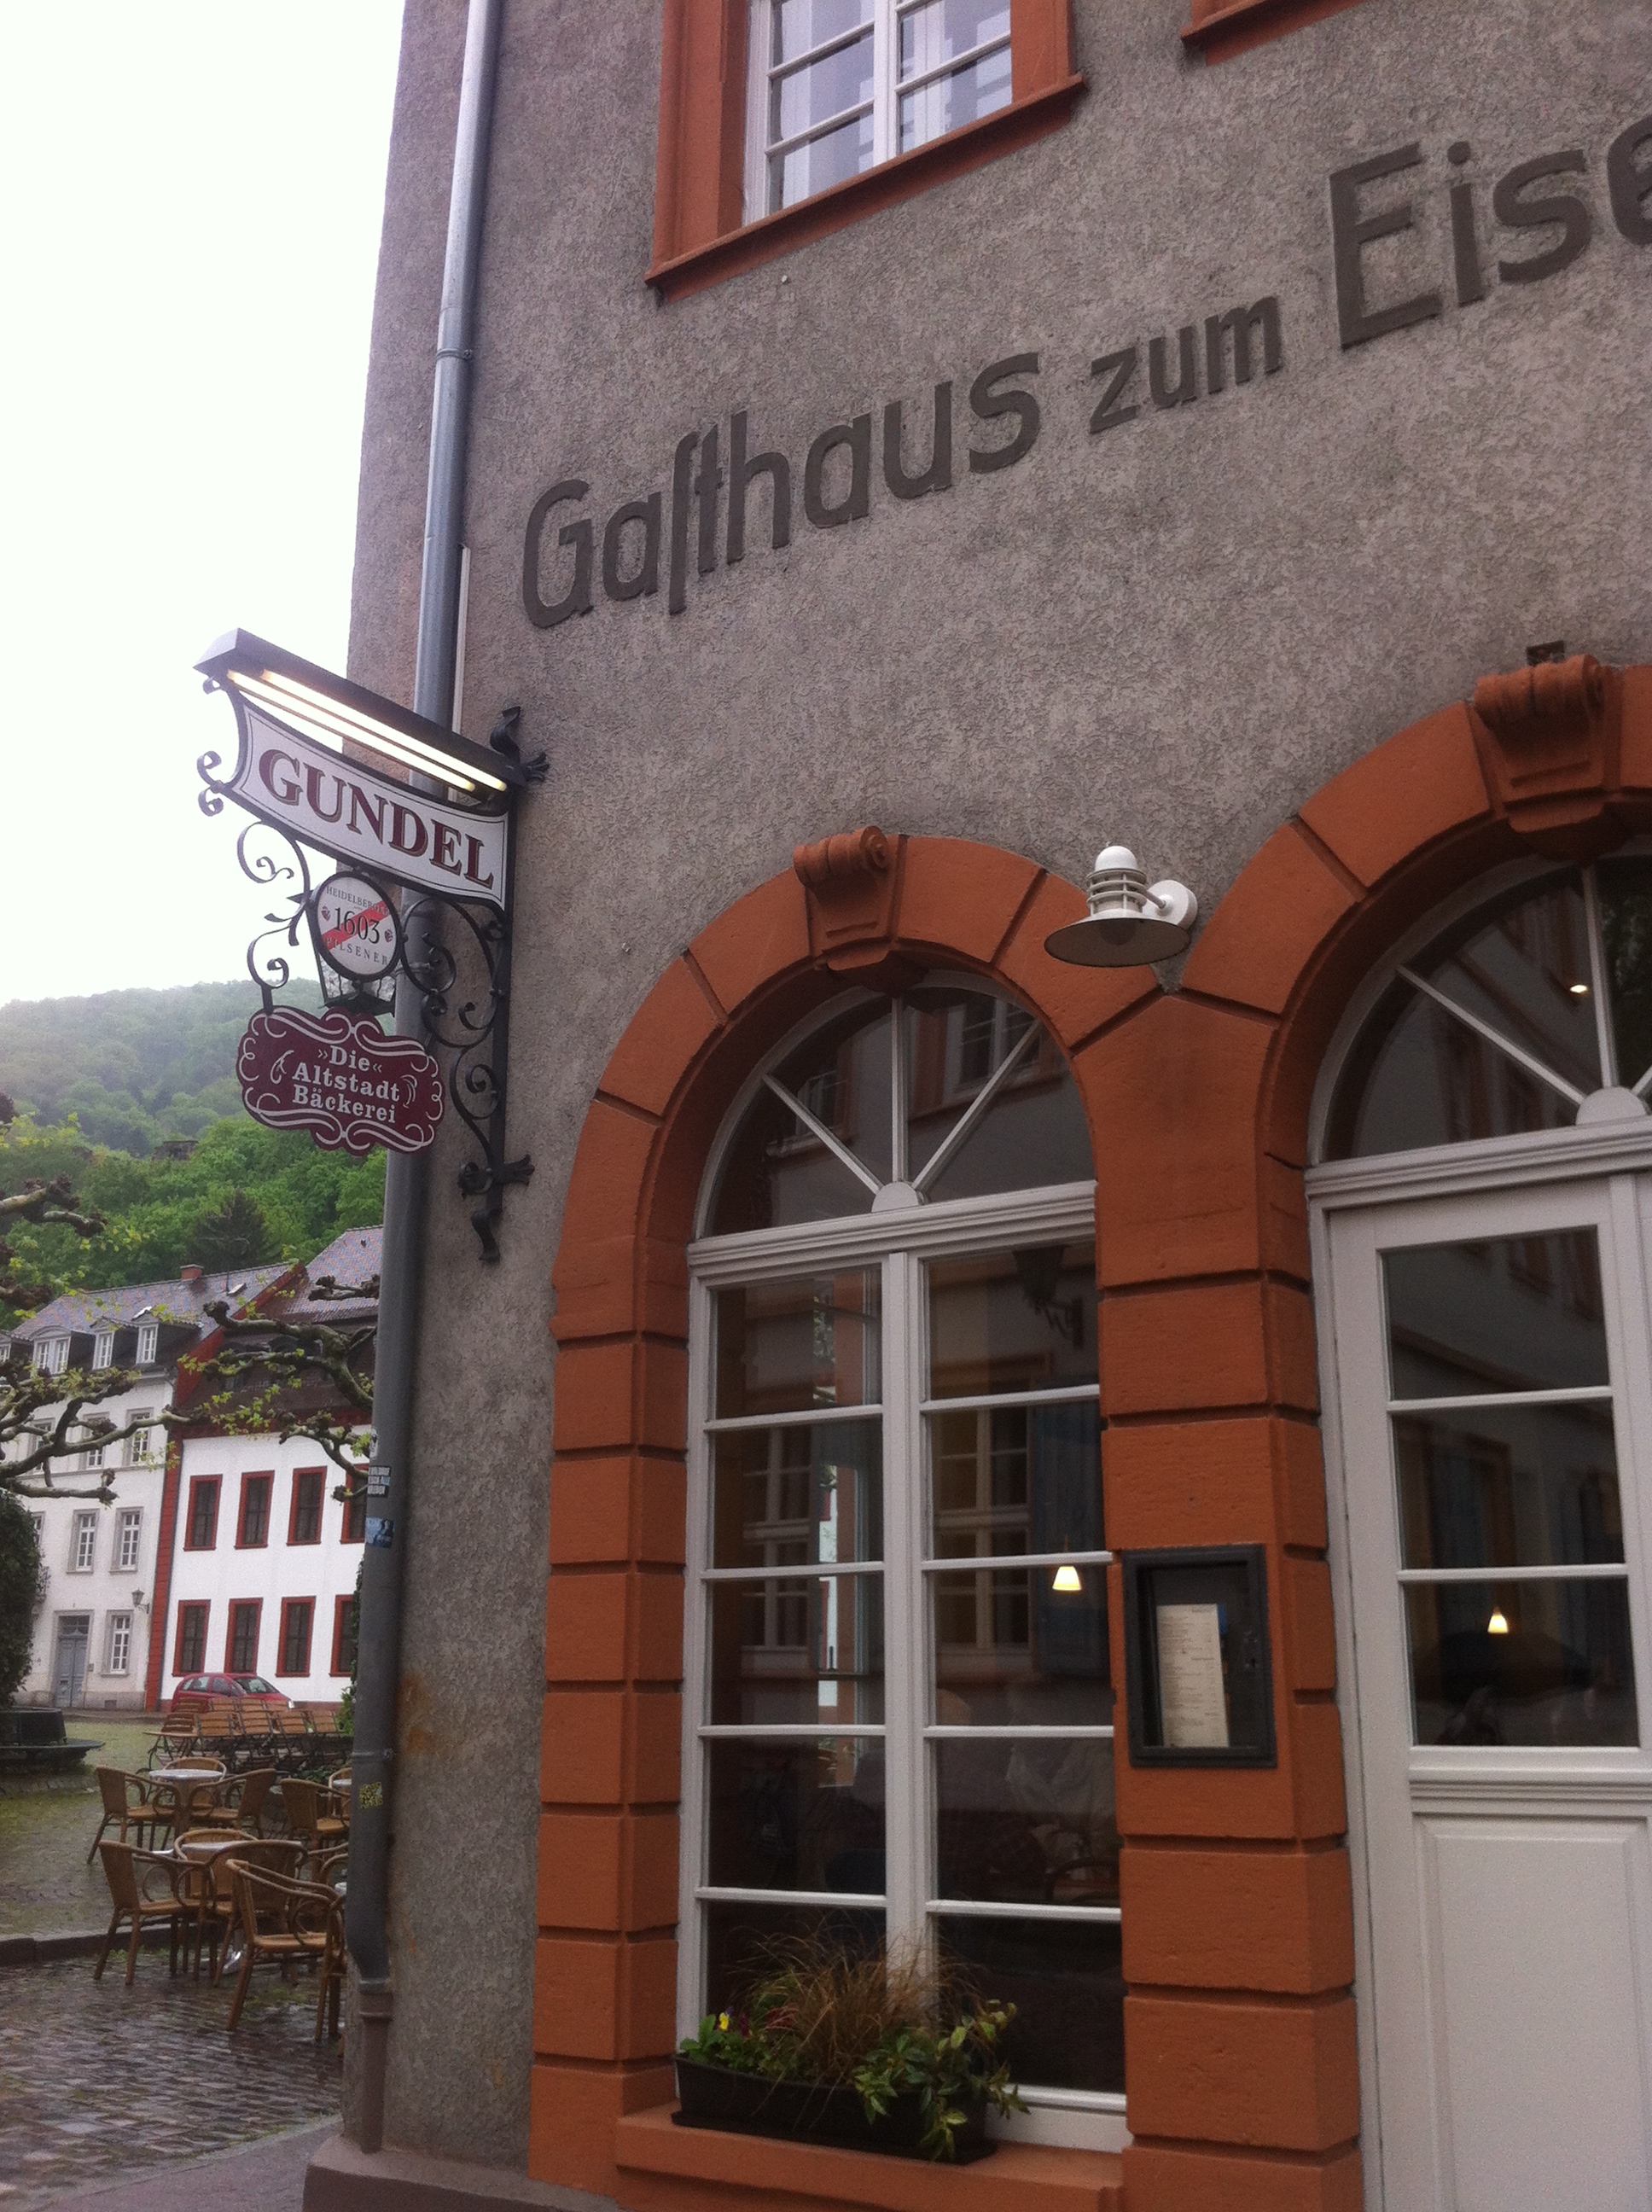 Café Gundel in Heidelberg